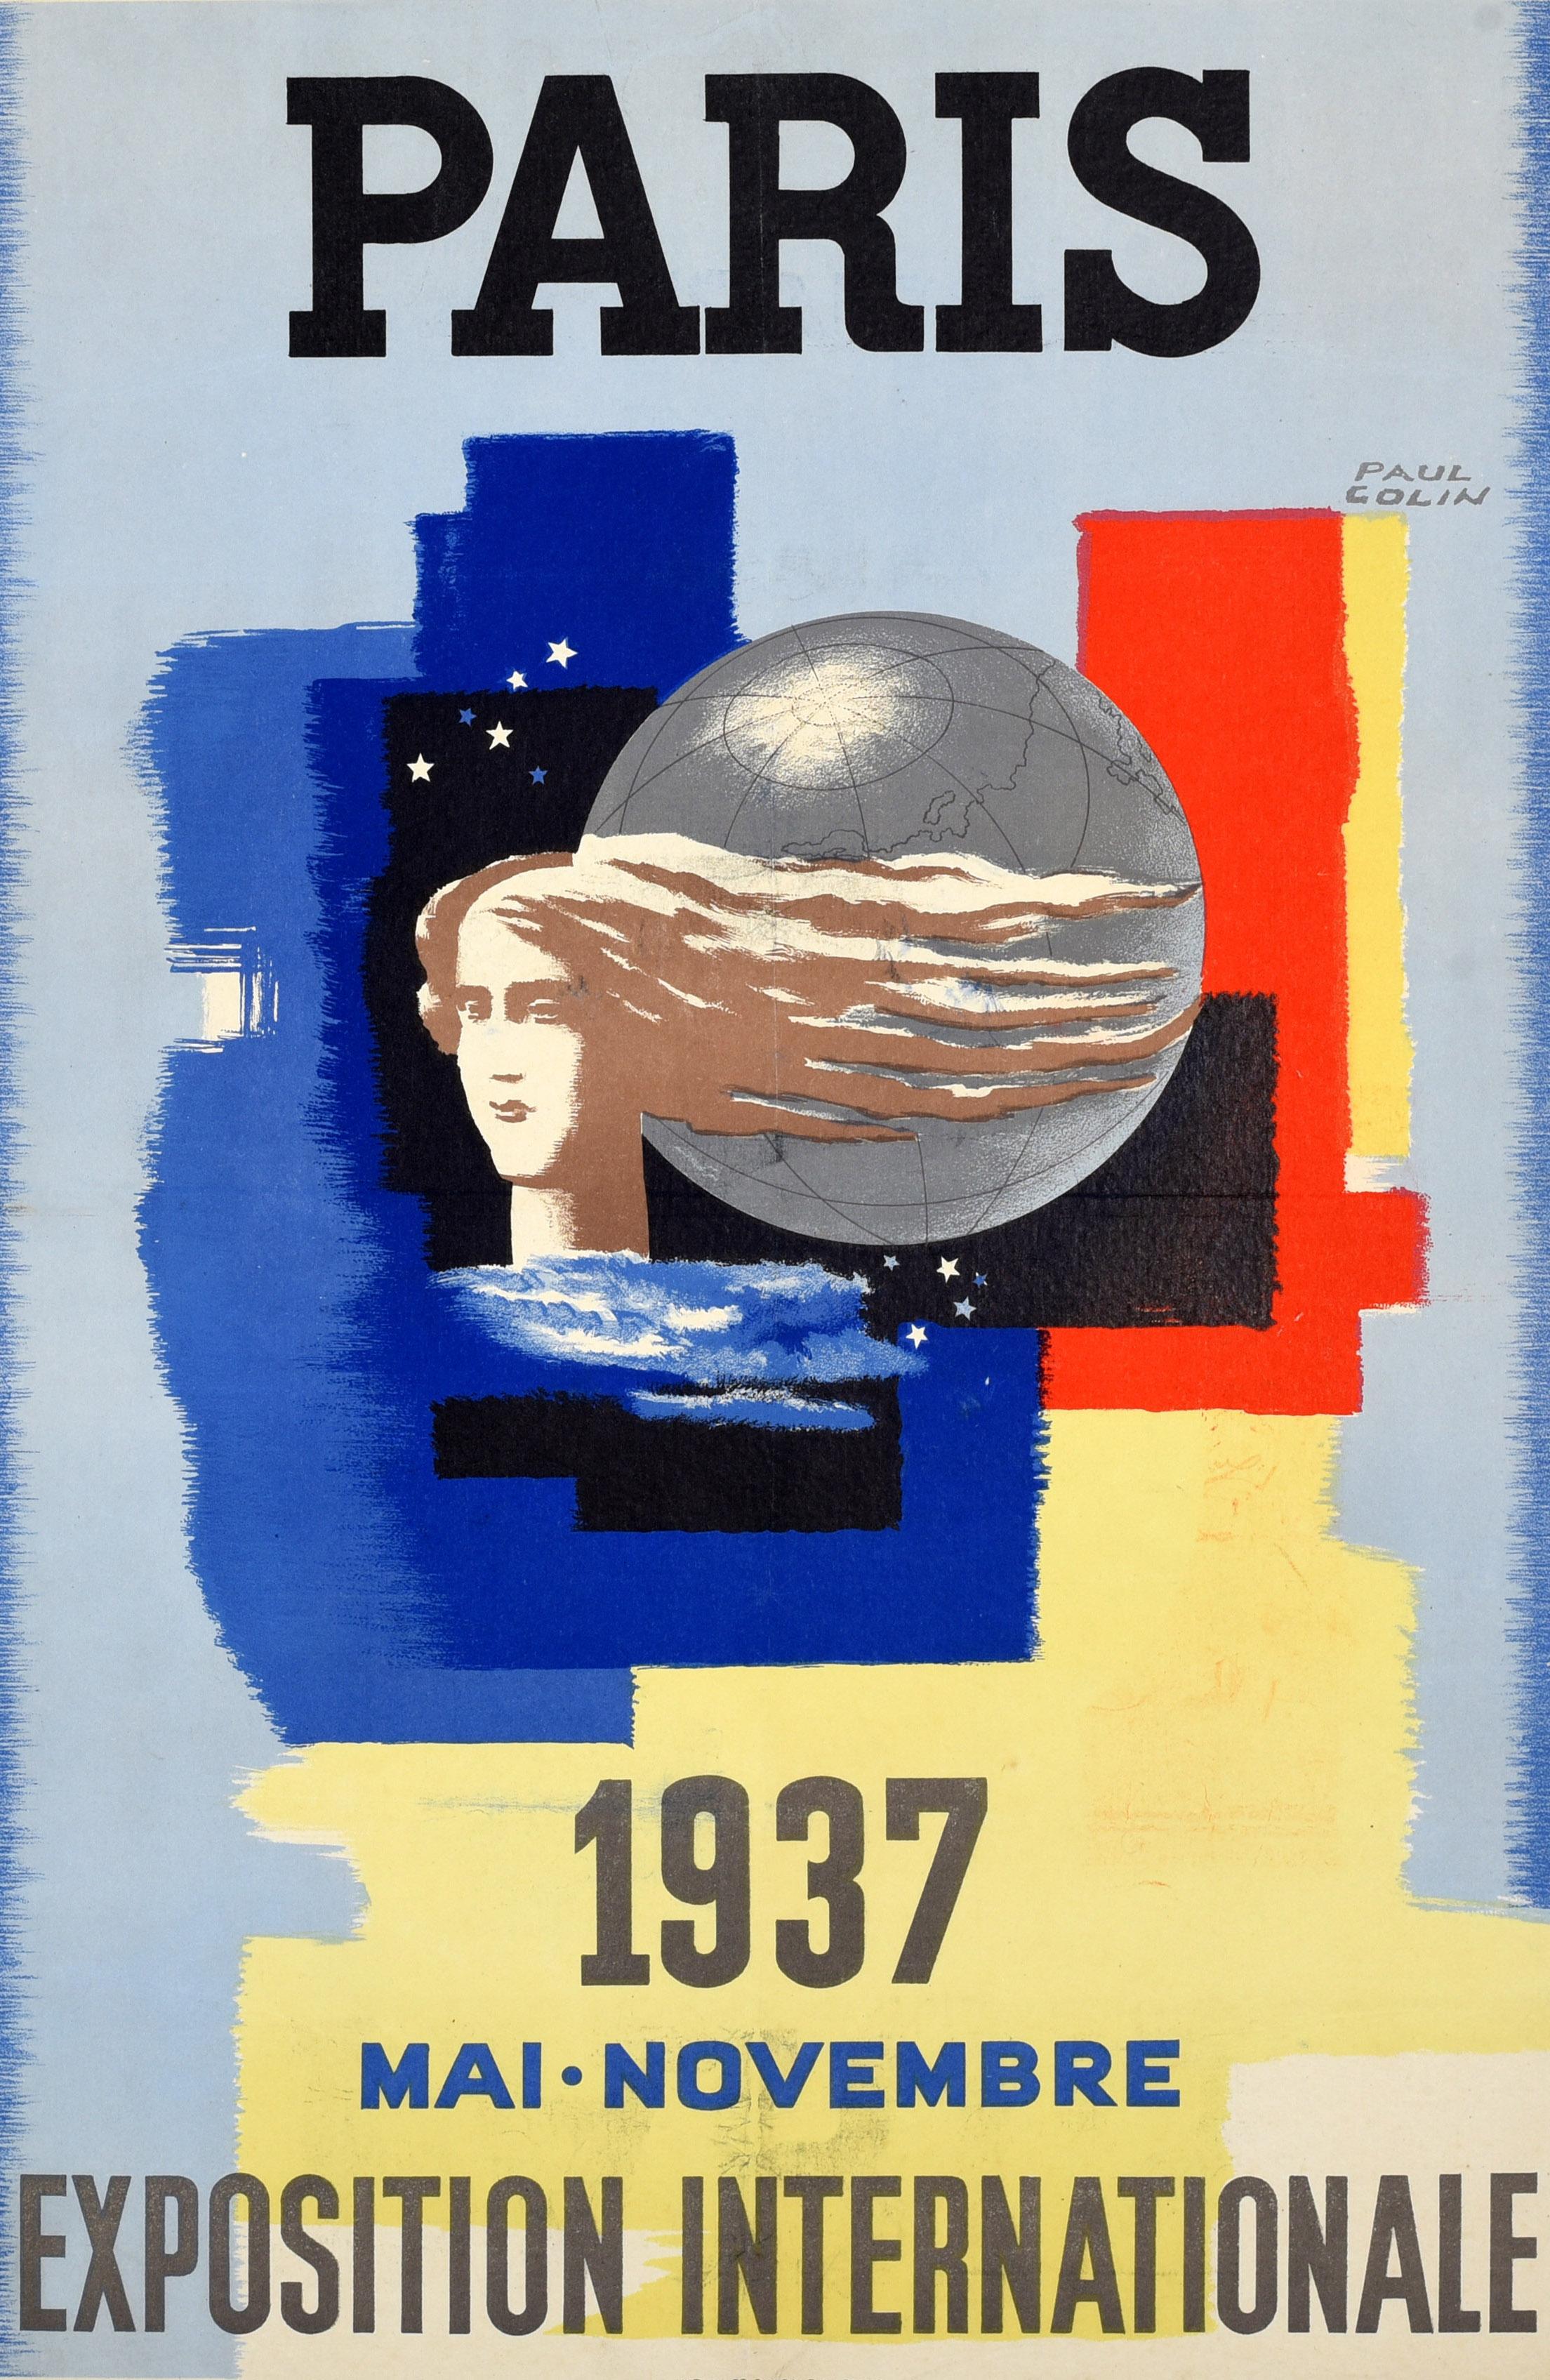 Original-Werbeplakat für die Internationale Ausstellung in Paris 1937, die von Mai bis November stattfand, mit einem großartigen Entwurf von Paul Colin (1892-1985), der eine Dame zeigt, deren Haare im Wind um eine Weltkugel wehen, mit blauen und